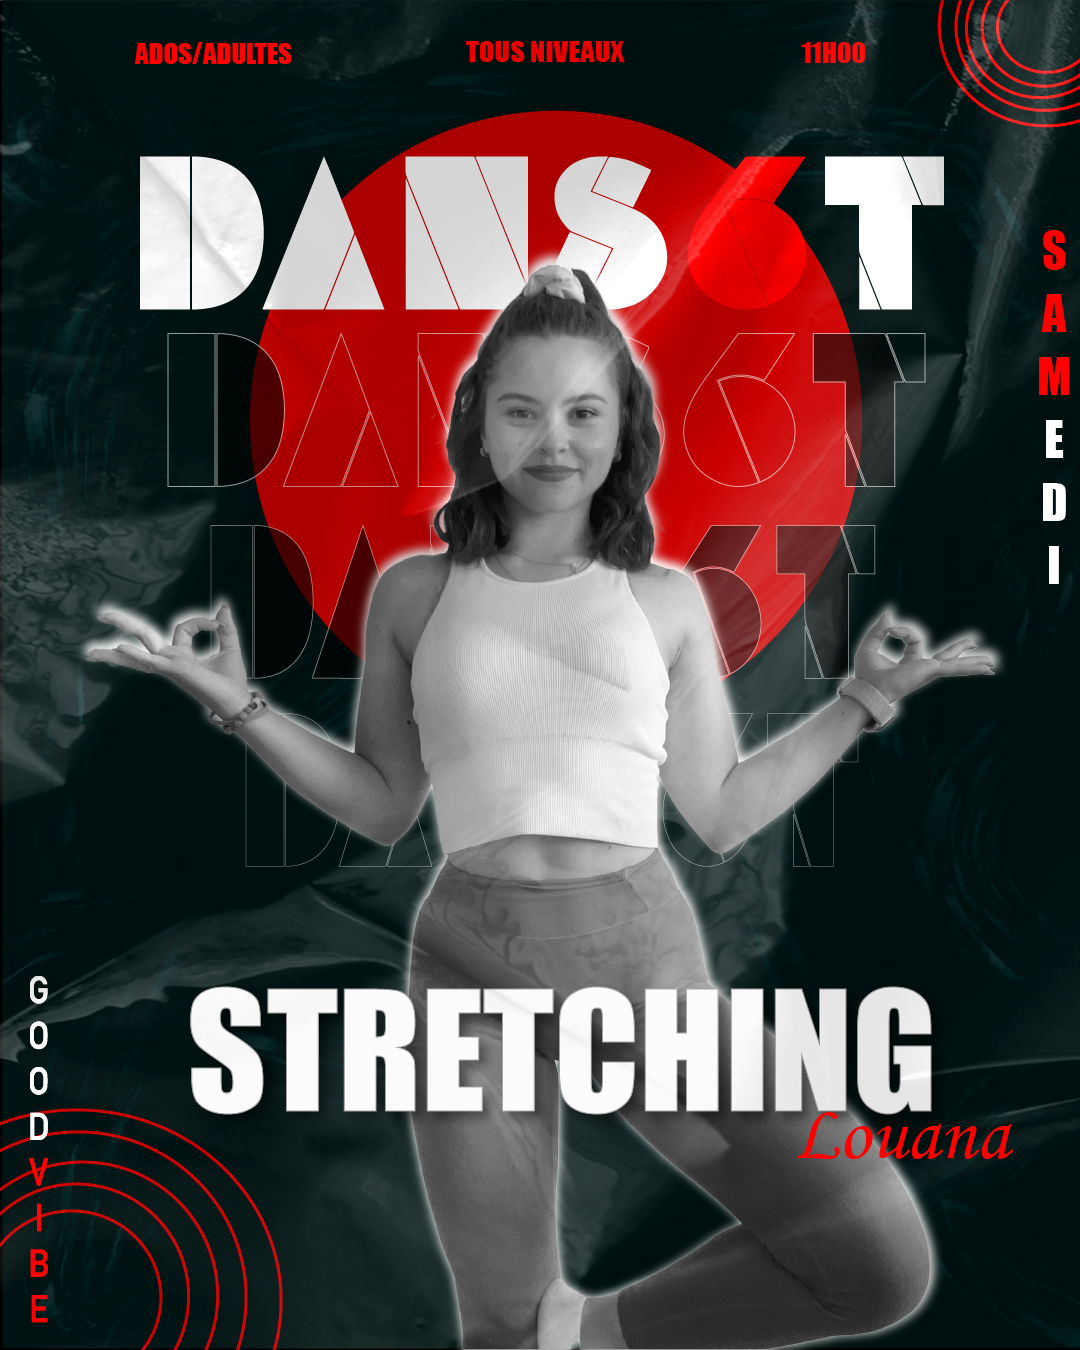 Visuel pour les cours de Stretching à Dans6T avec Louana.